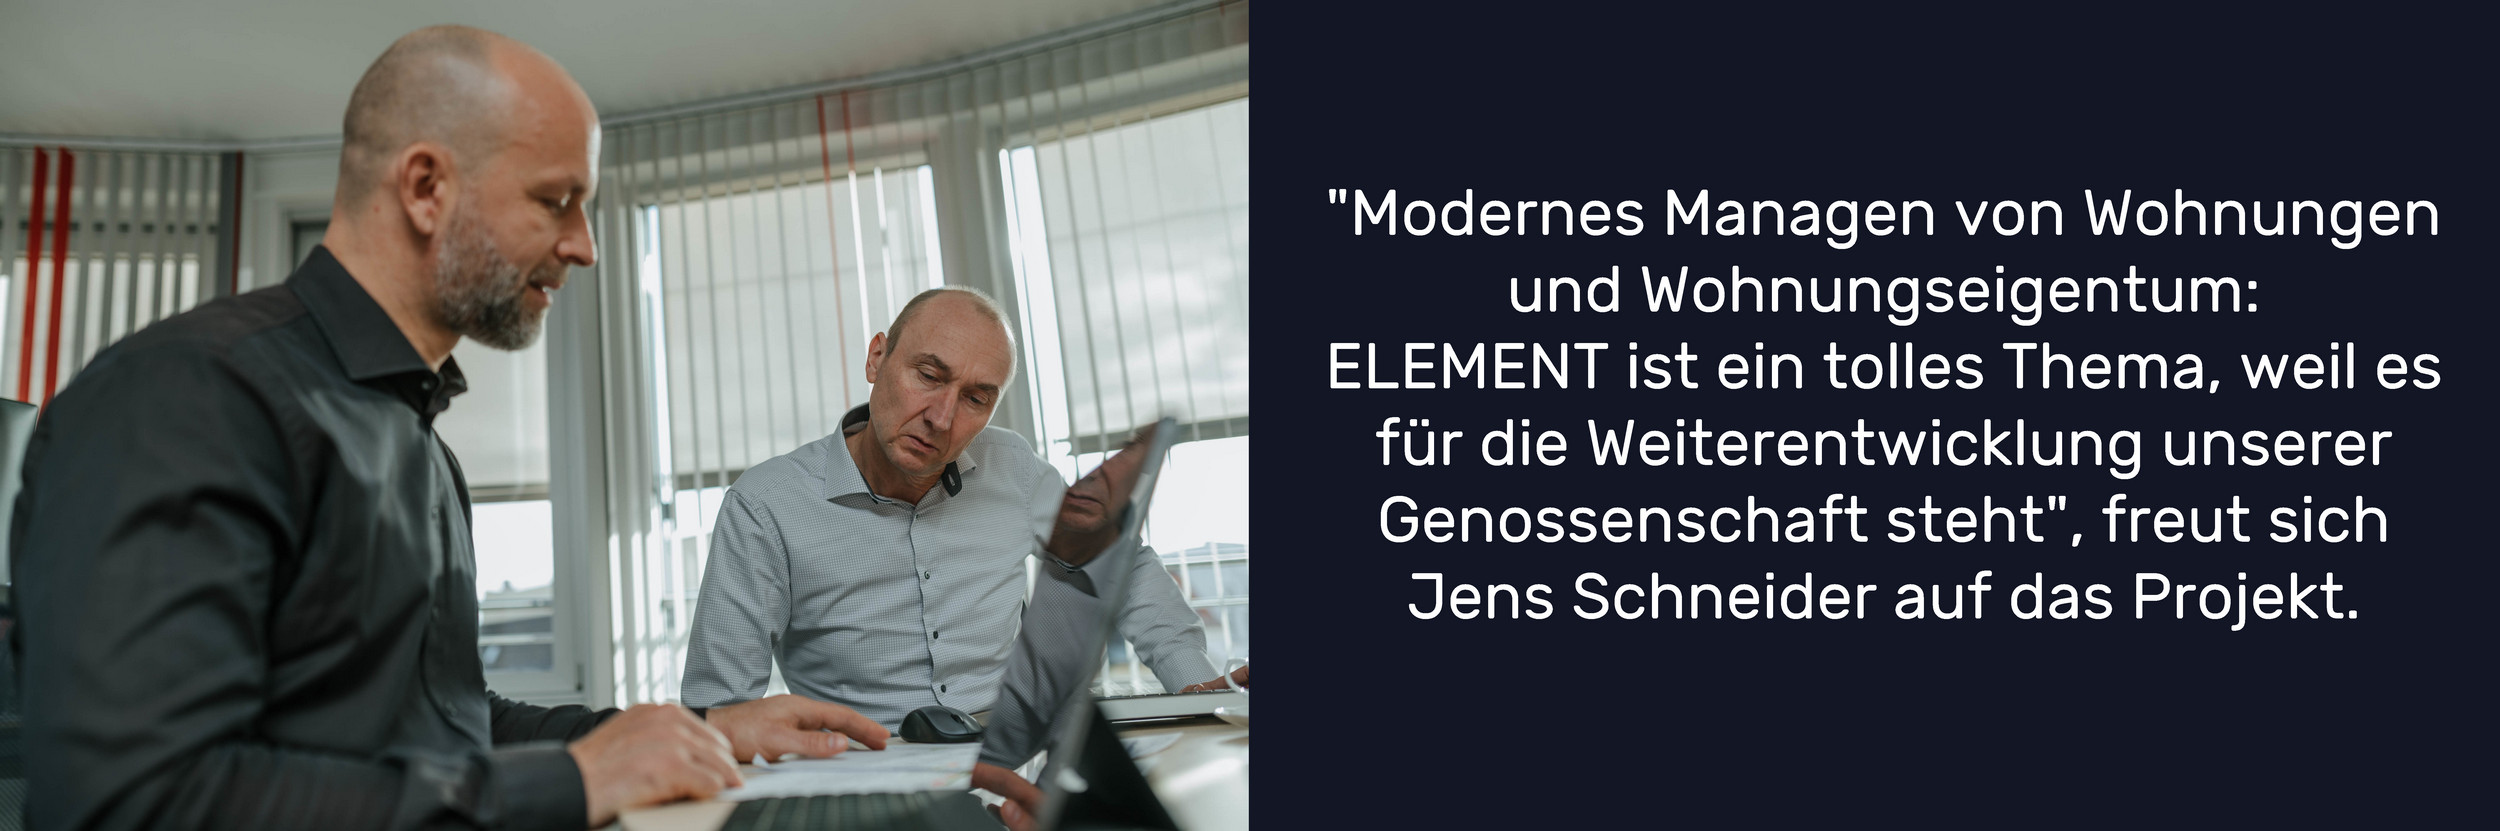 "Modernes Managen von Wohnungen und Wohnungseigentum: ELEMENT ist ein tolles Thema, weil es für die Weiterentwicklung unserer Genossenschaft steht", freut sich Jens Schneider auf das Projekt.